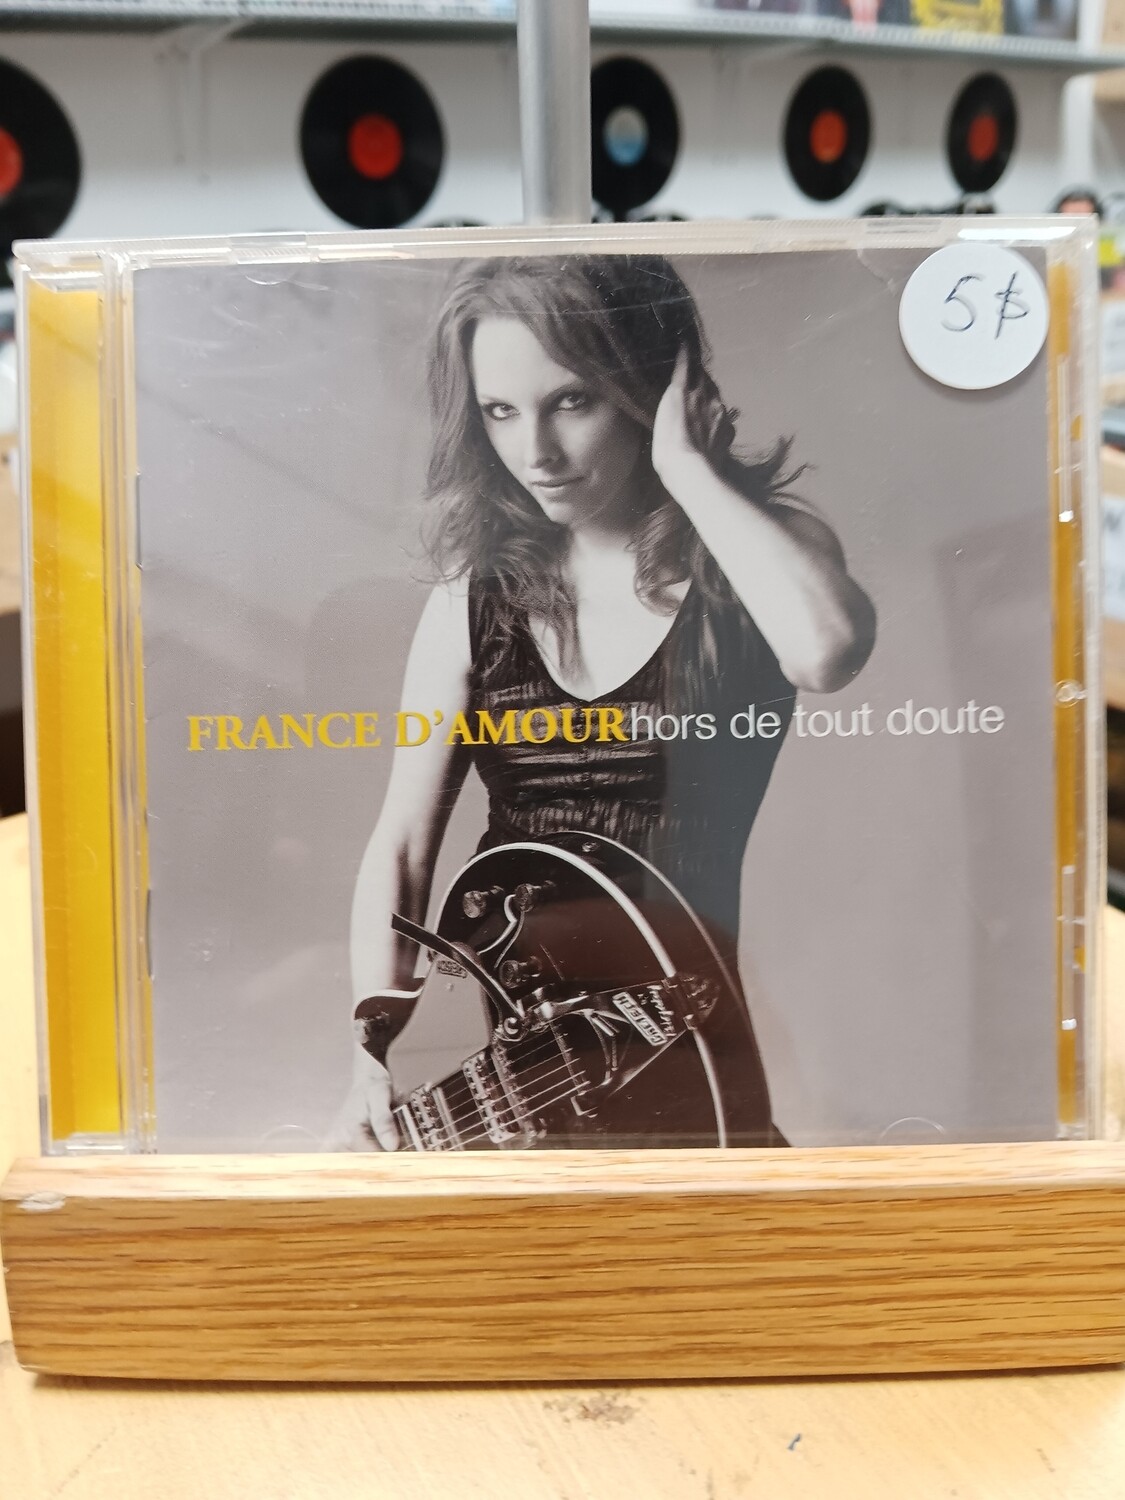 France D'Amour - Hors de tout doute (CD)